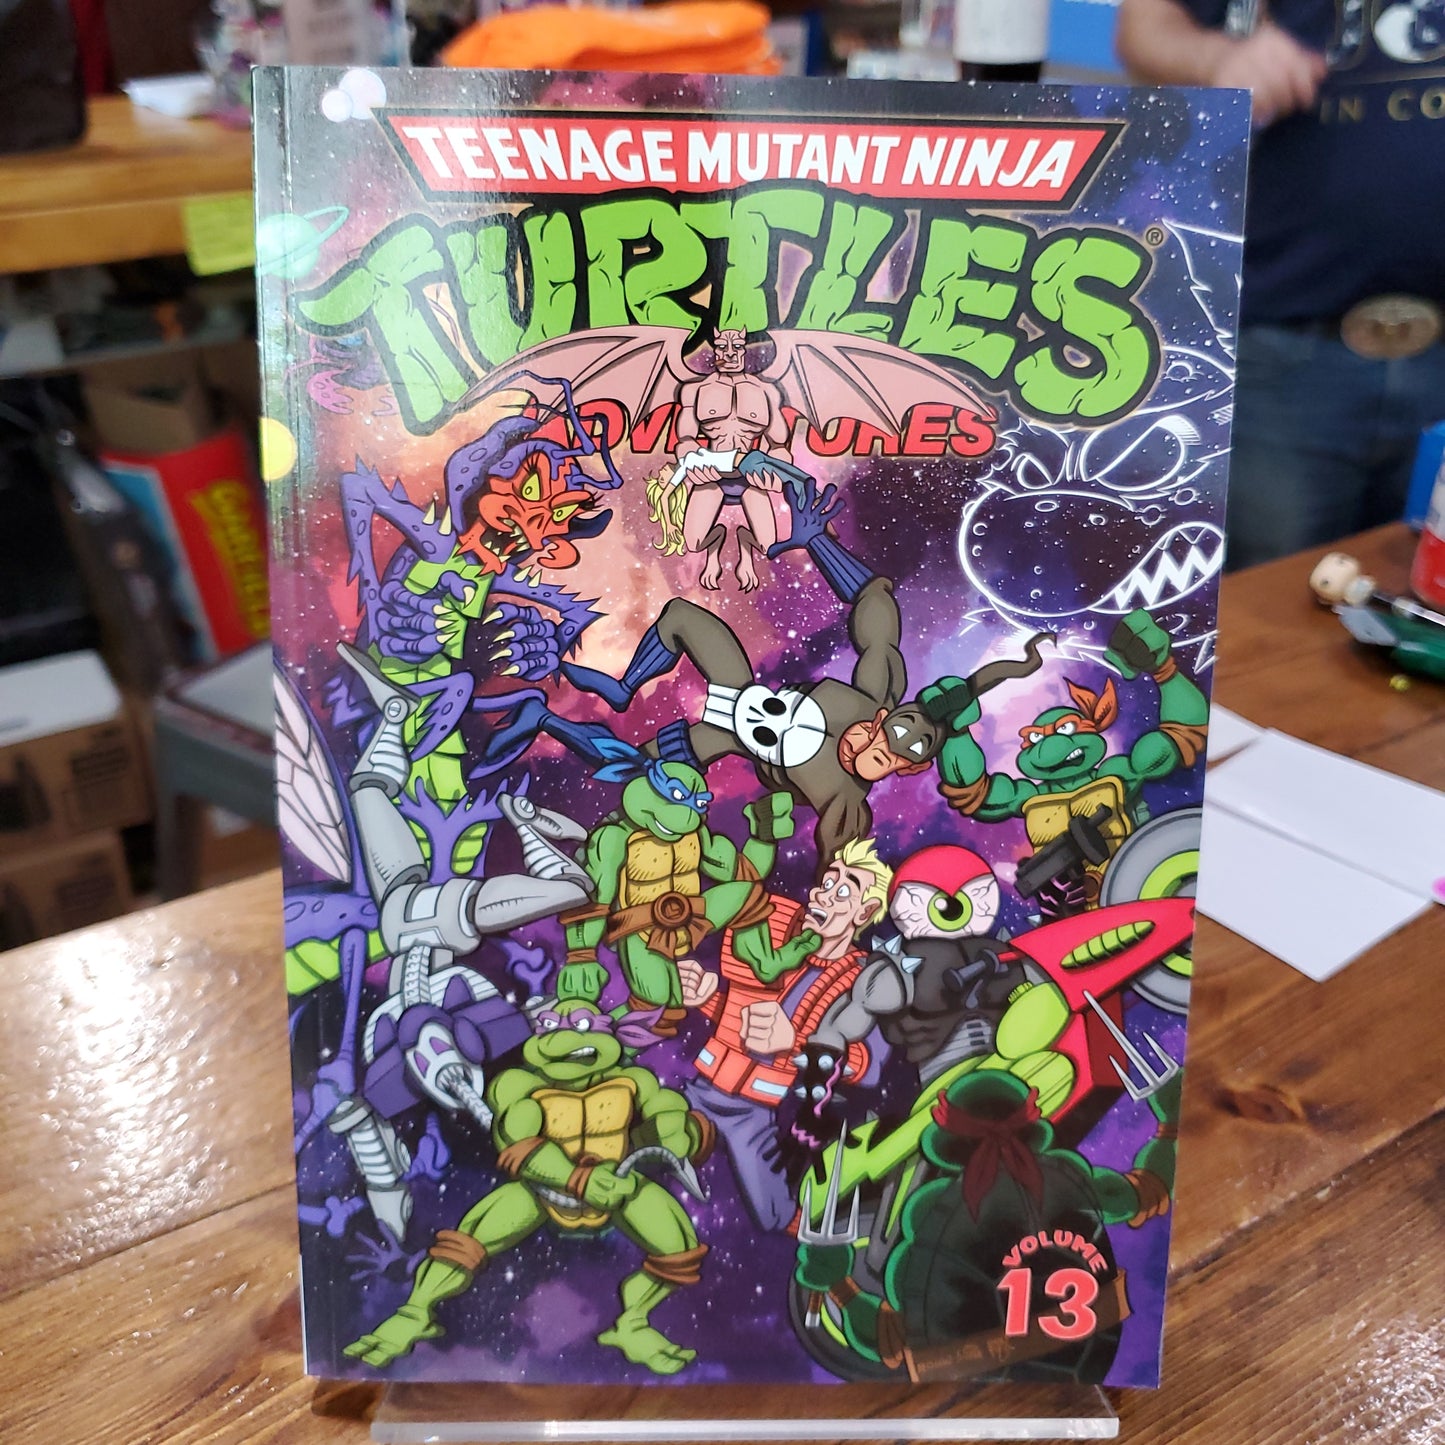 Teenage Mutant Ninja Turtles Adventures Vol. 13 - IDW